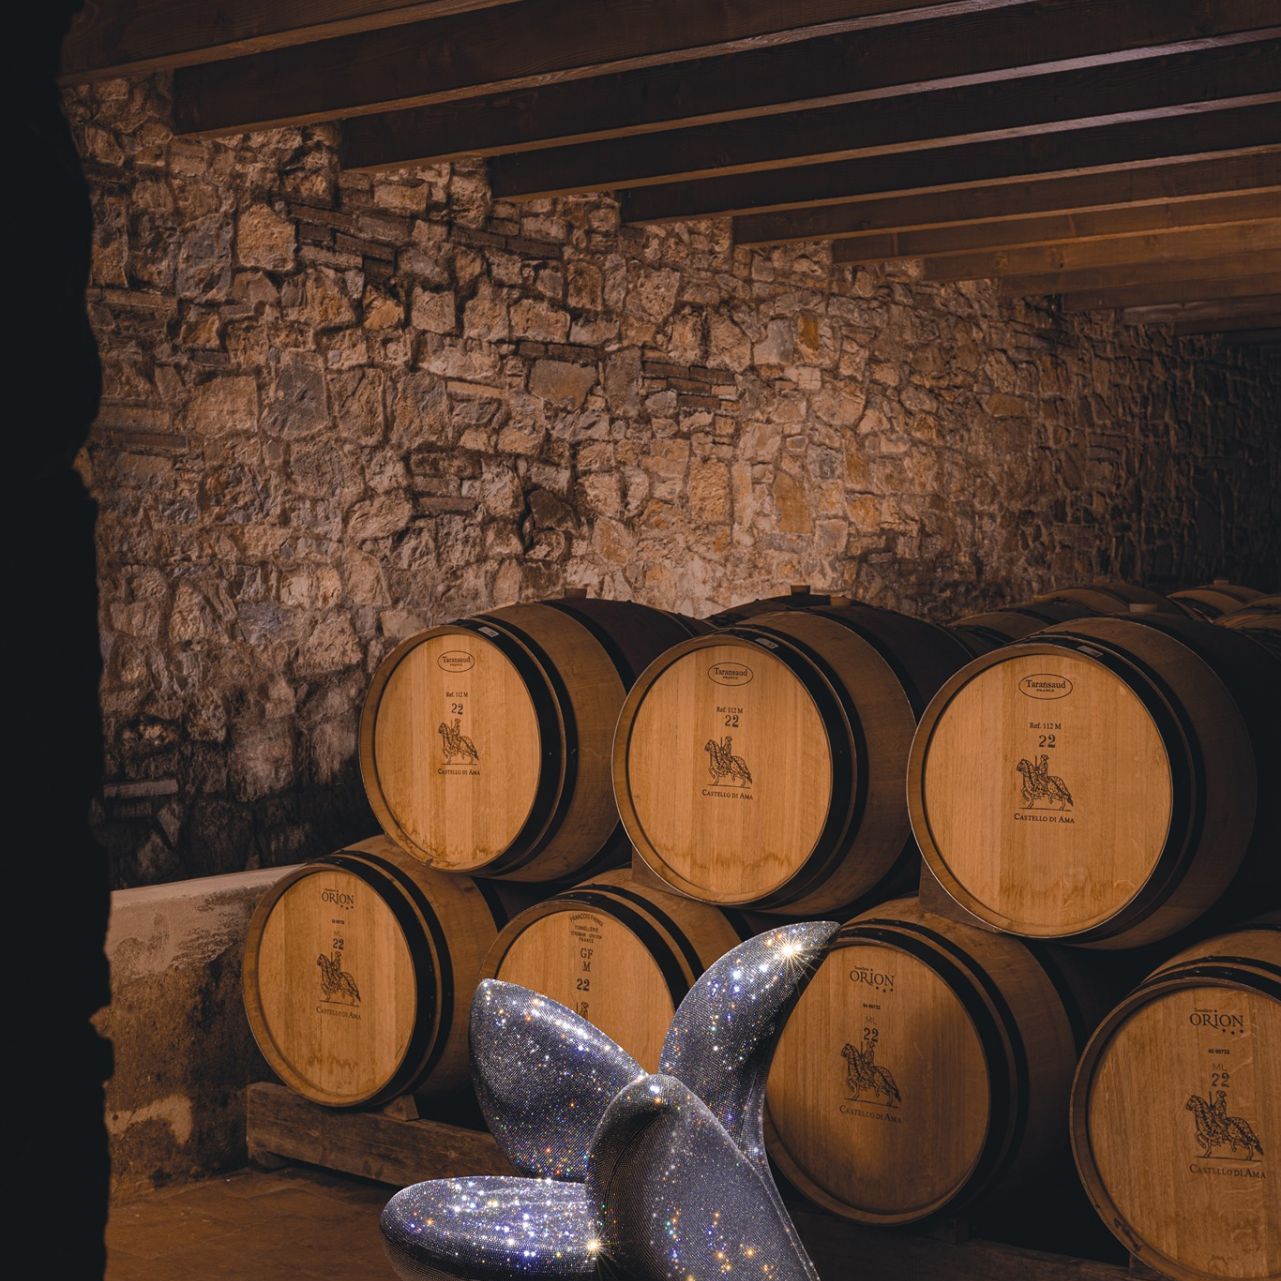   Getsuen . Mit Swarovski kristallisiertes Diamant scheint durch die Fässer, die den kostbaren Wein von Castello di ama halten. 